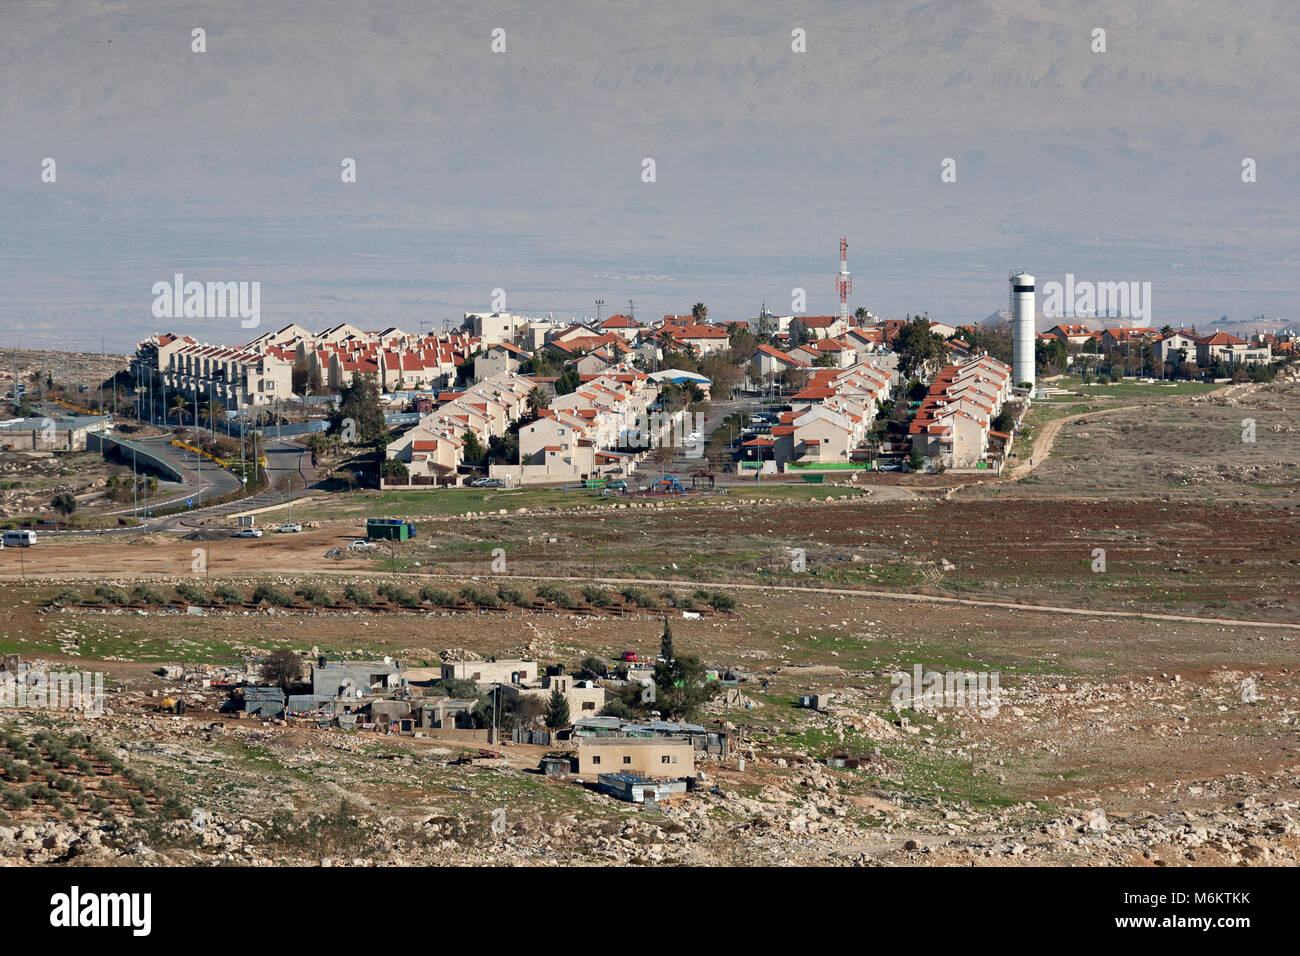 Gerusalemme, Palestina, Gennaio 12, 2011: insediamento ebraico costruito sui terreni che sono riconosciuti come il palestinese nei Territori Occupati da internation Foto Stock